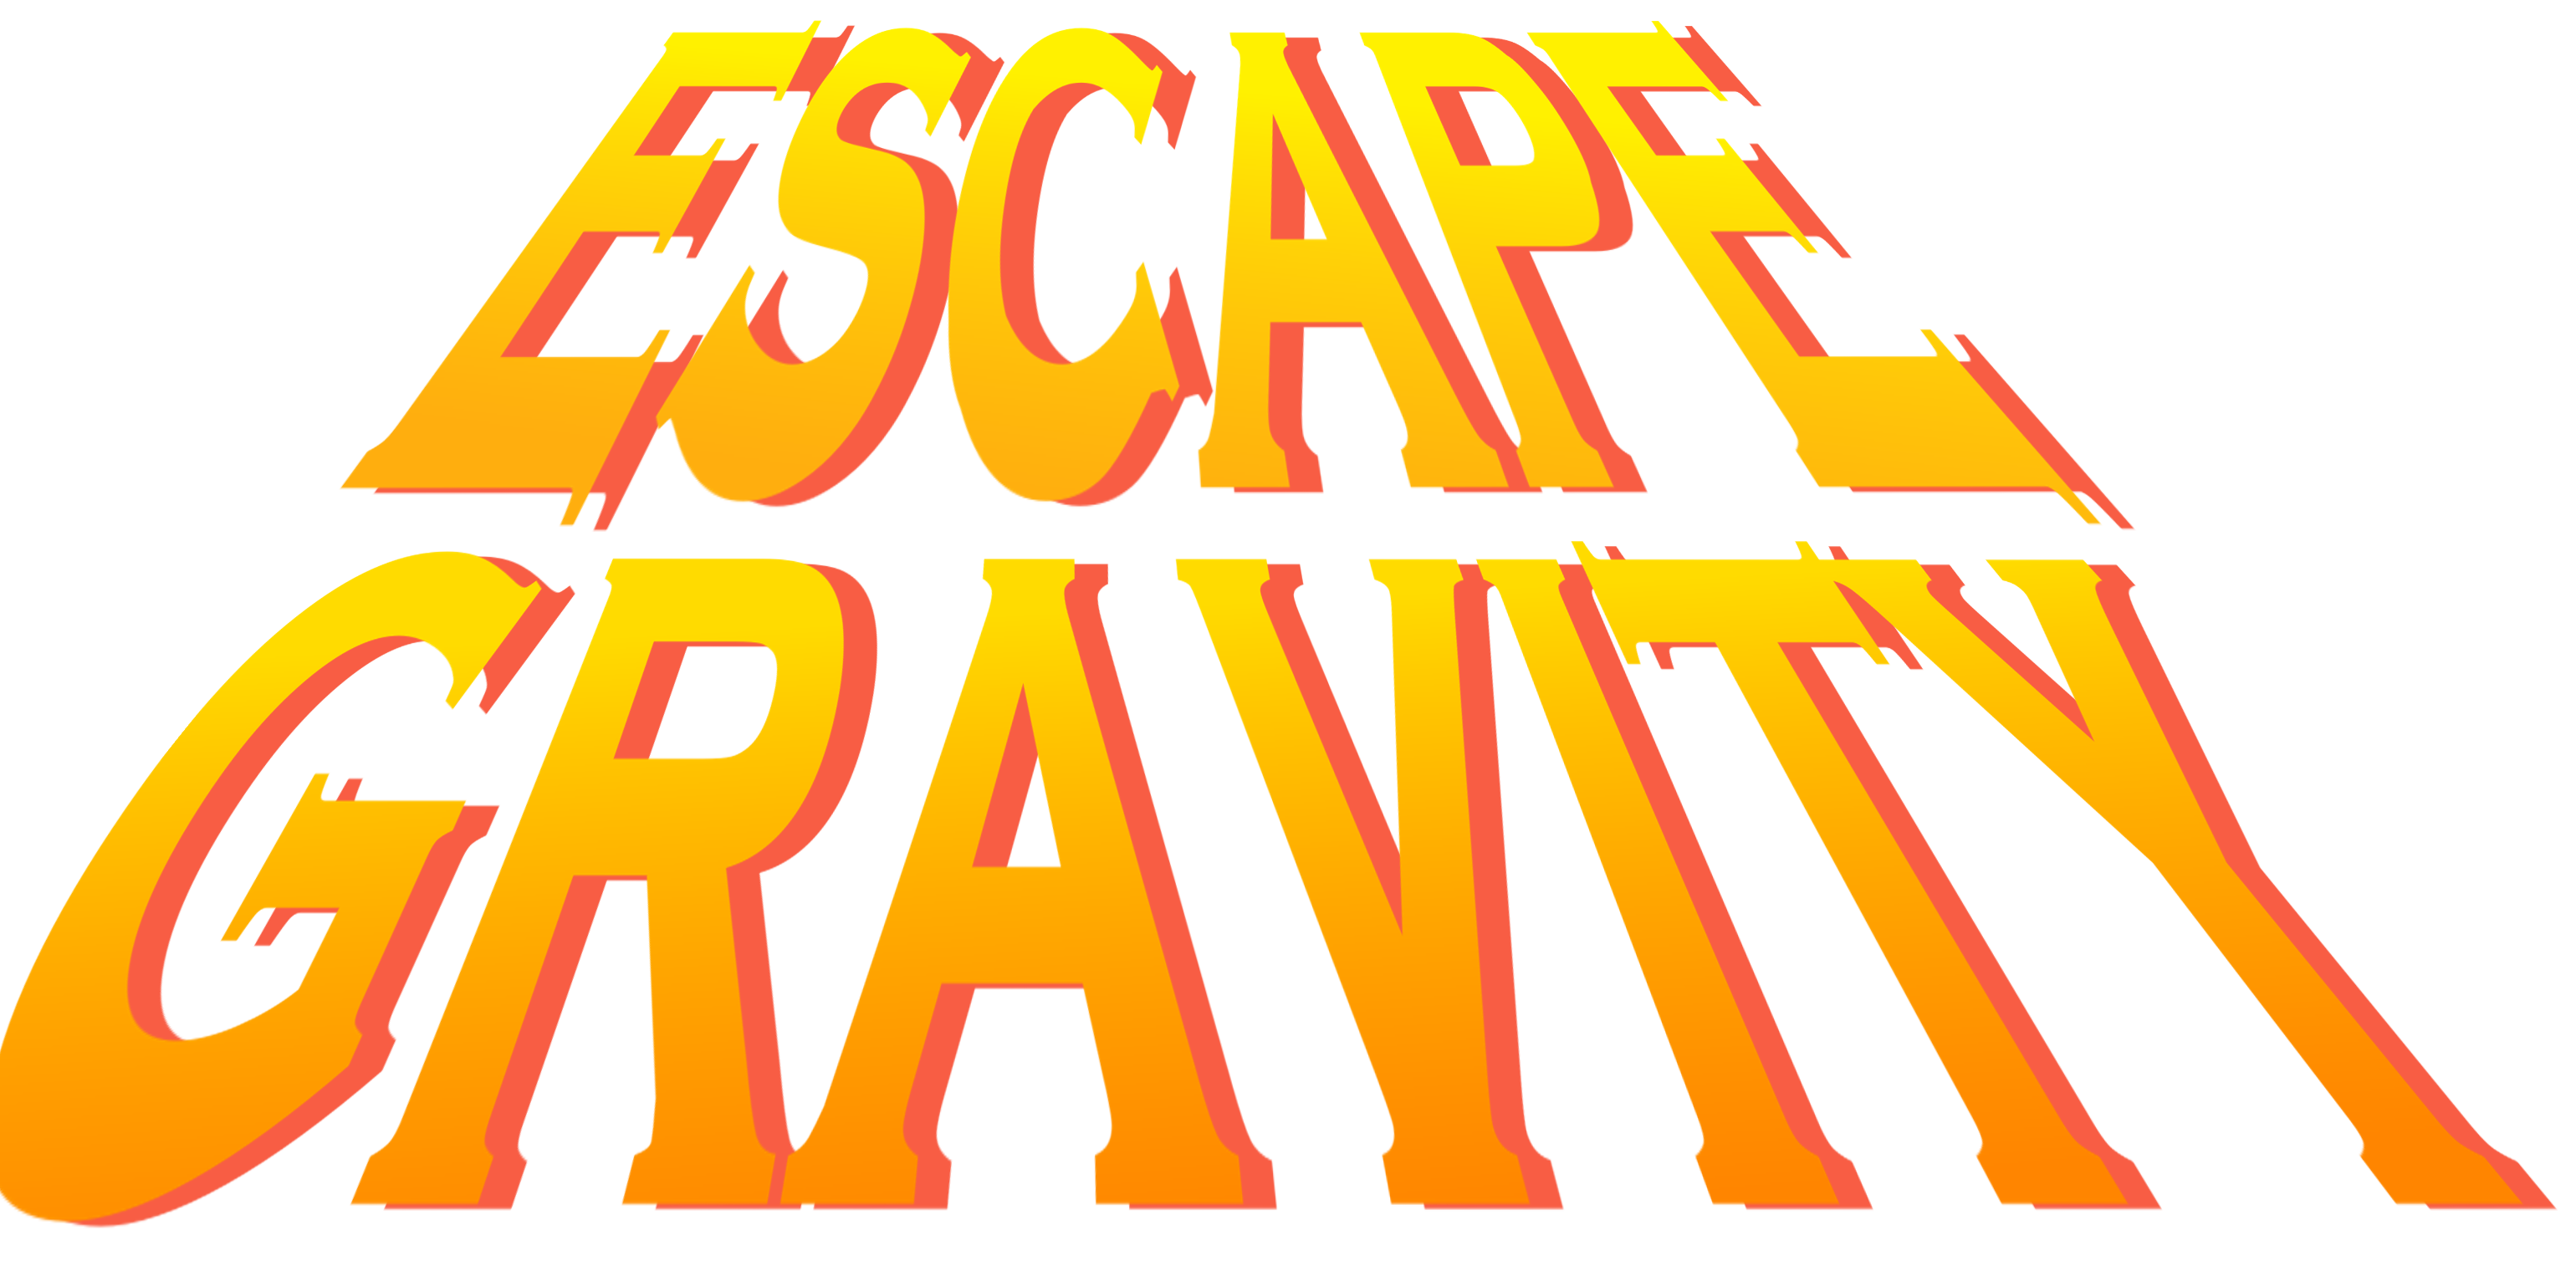 Escape Gravity